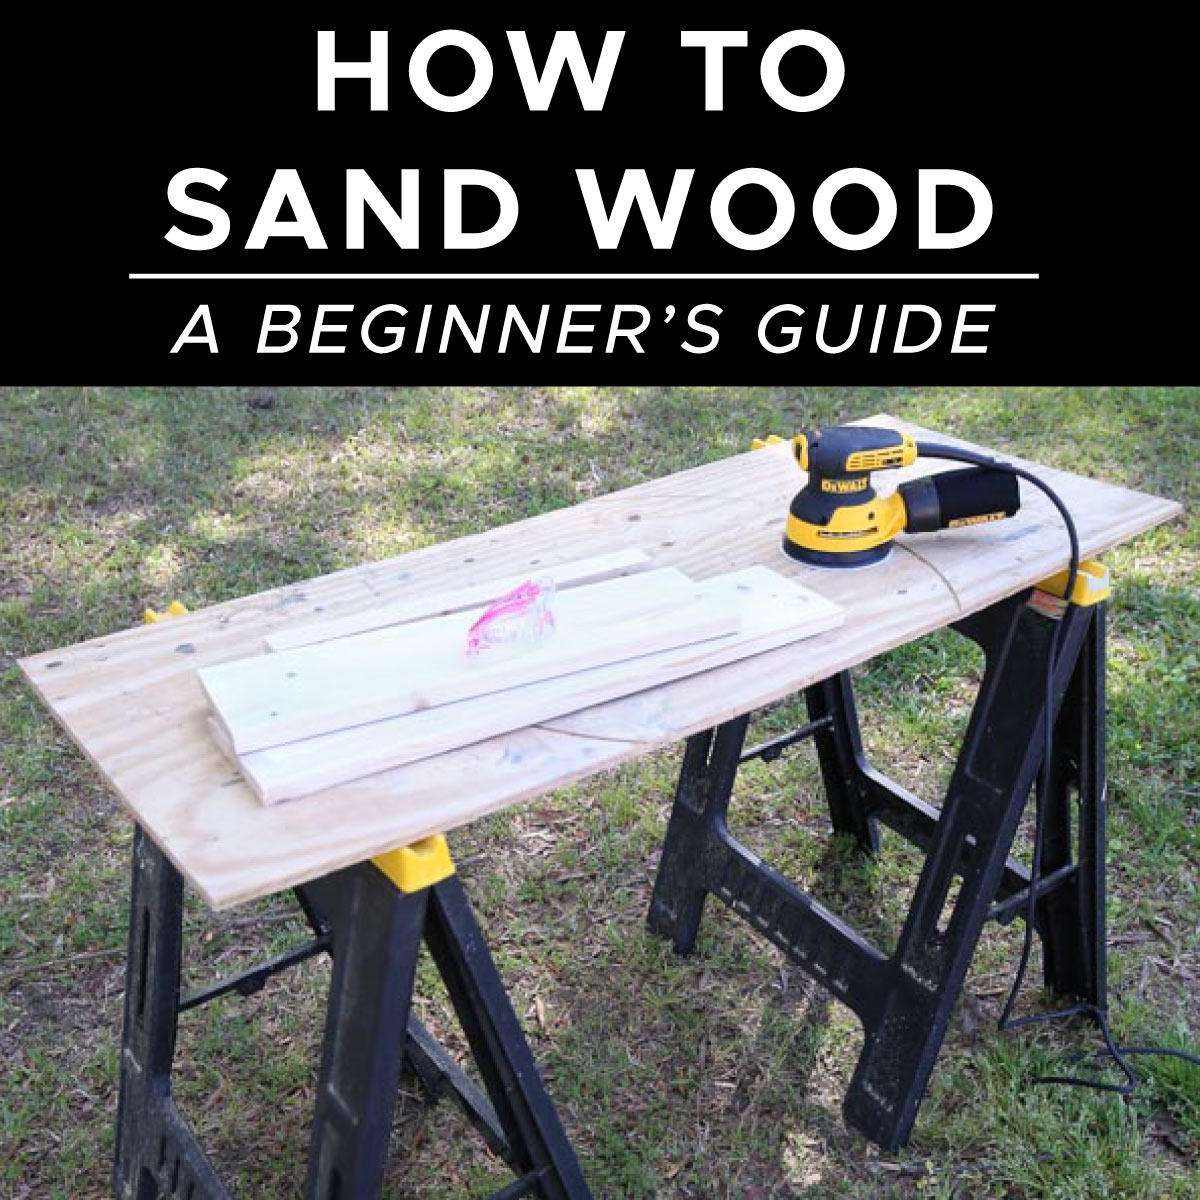 Sand Wood Electric Sander, Sanding Paper Palm Sander